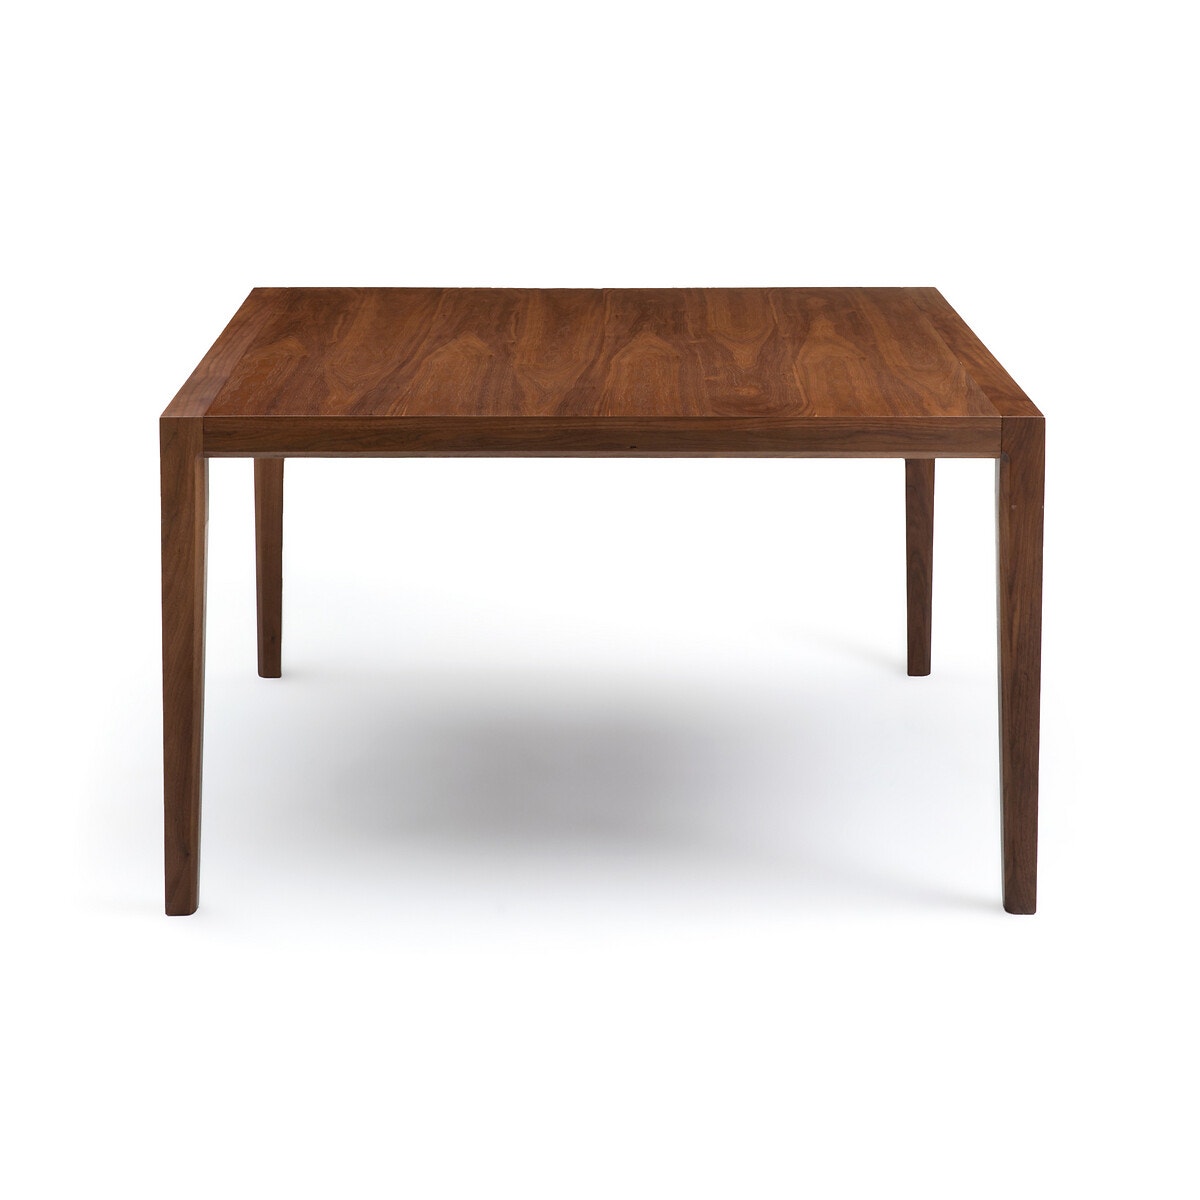 Τραπέζι από ξύλο καρυδιάς, σχεδίασης E. Gallina